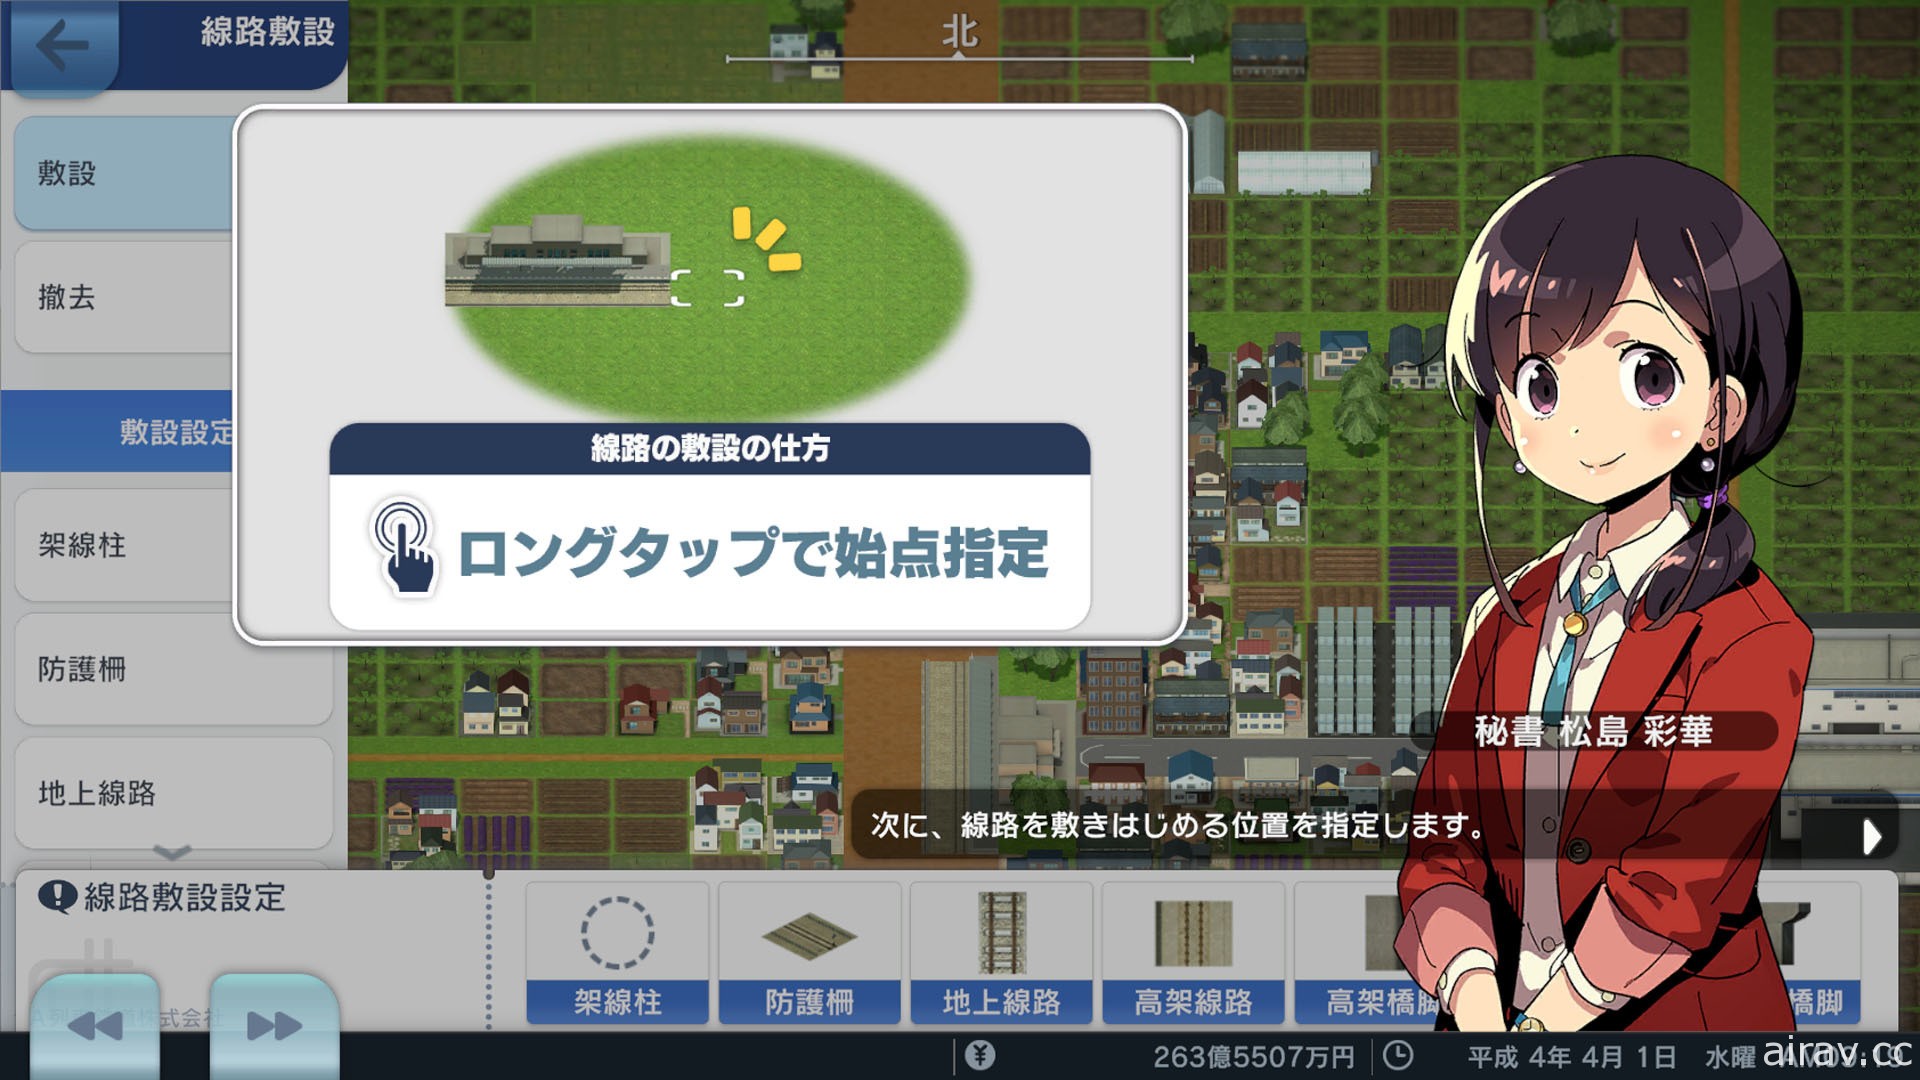 云端游戏版《A 列车 开始吧 观光开发计画 MOBILE》今于日本推出